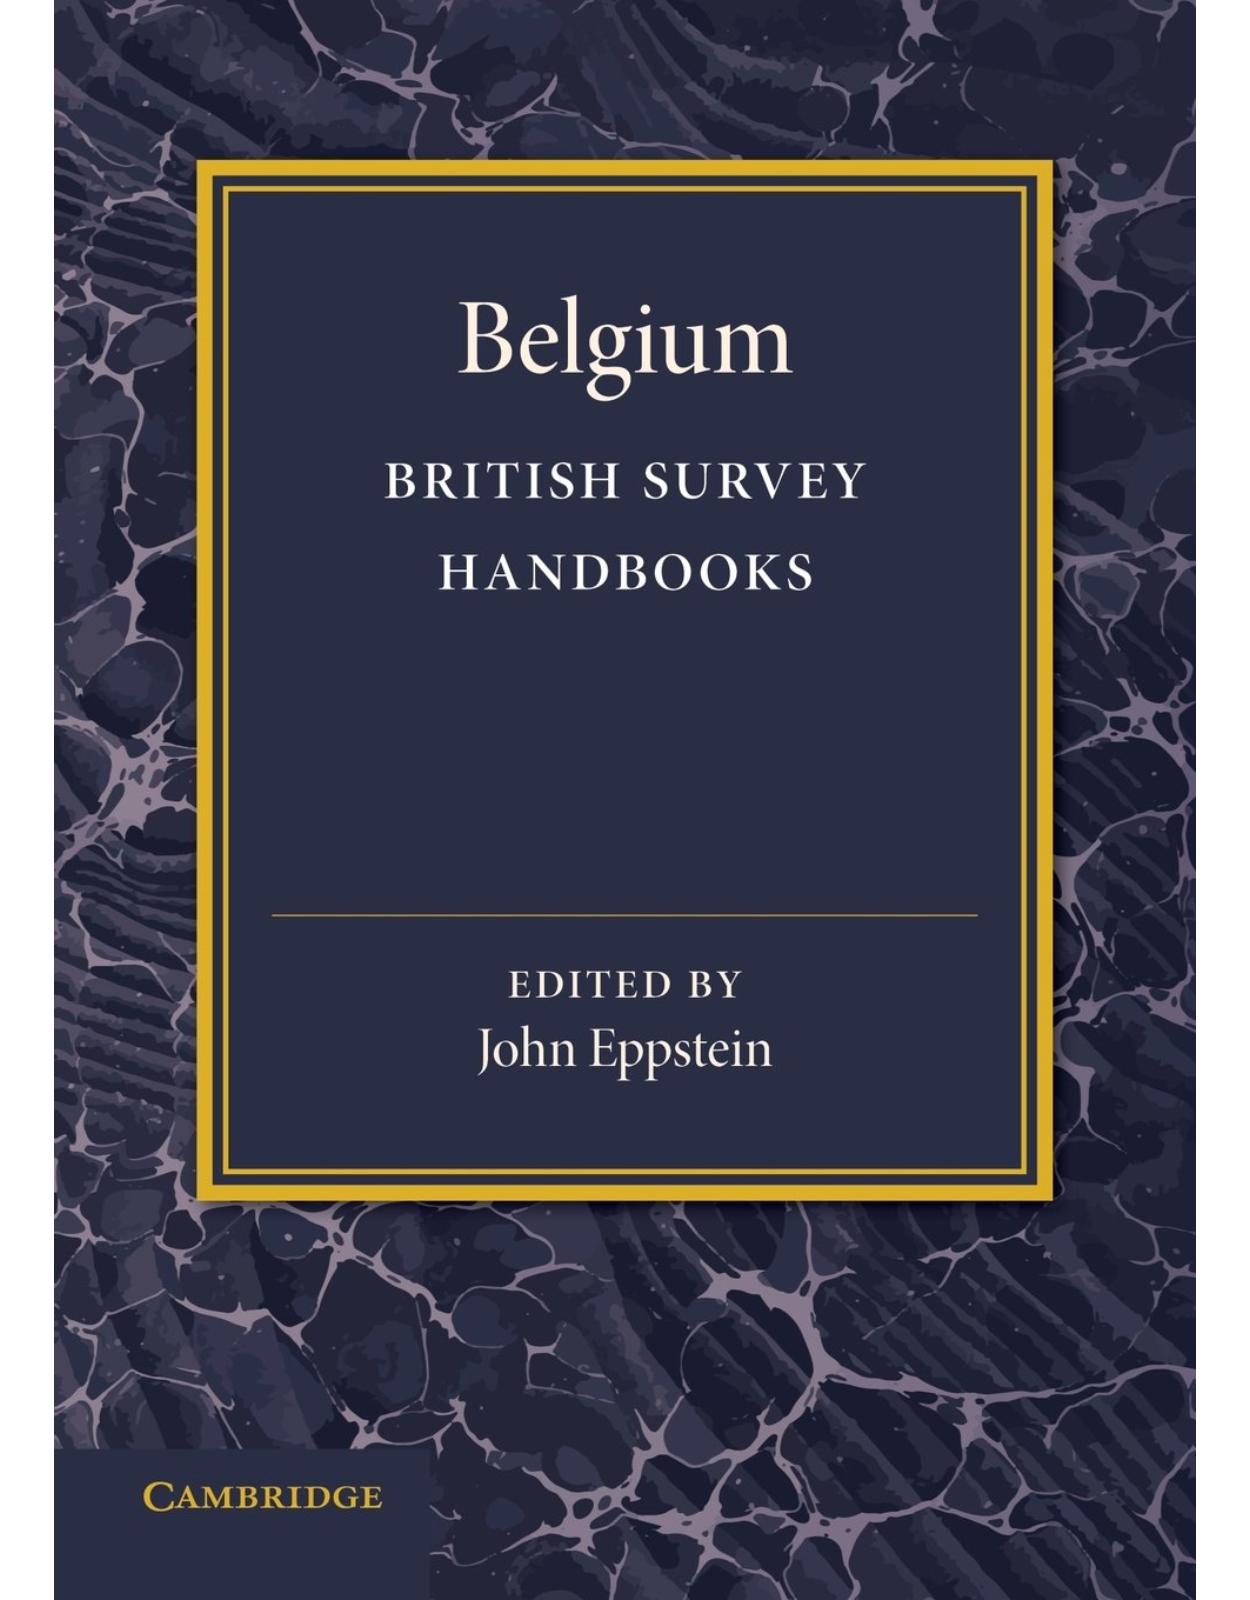 Belgium (British Survey Handbooks)